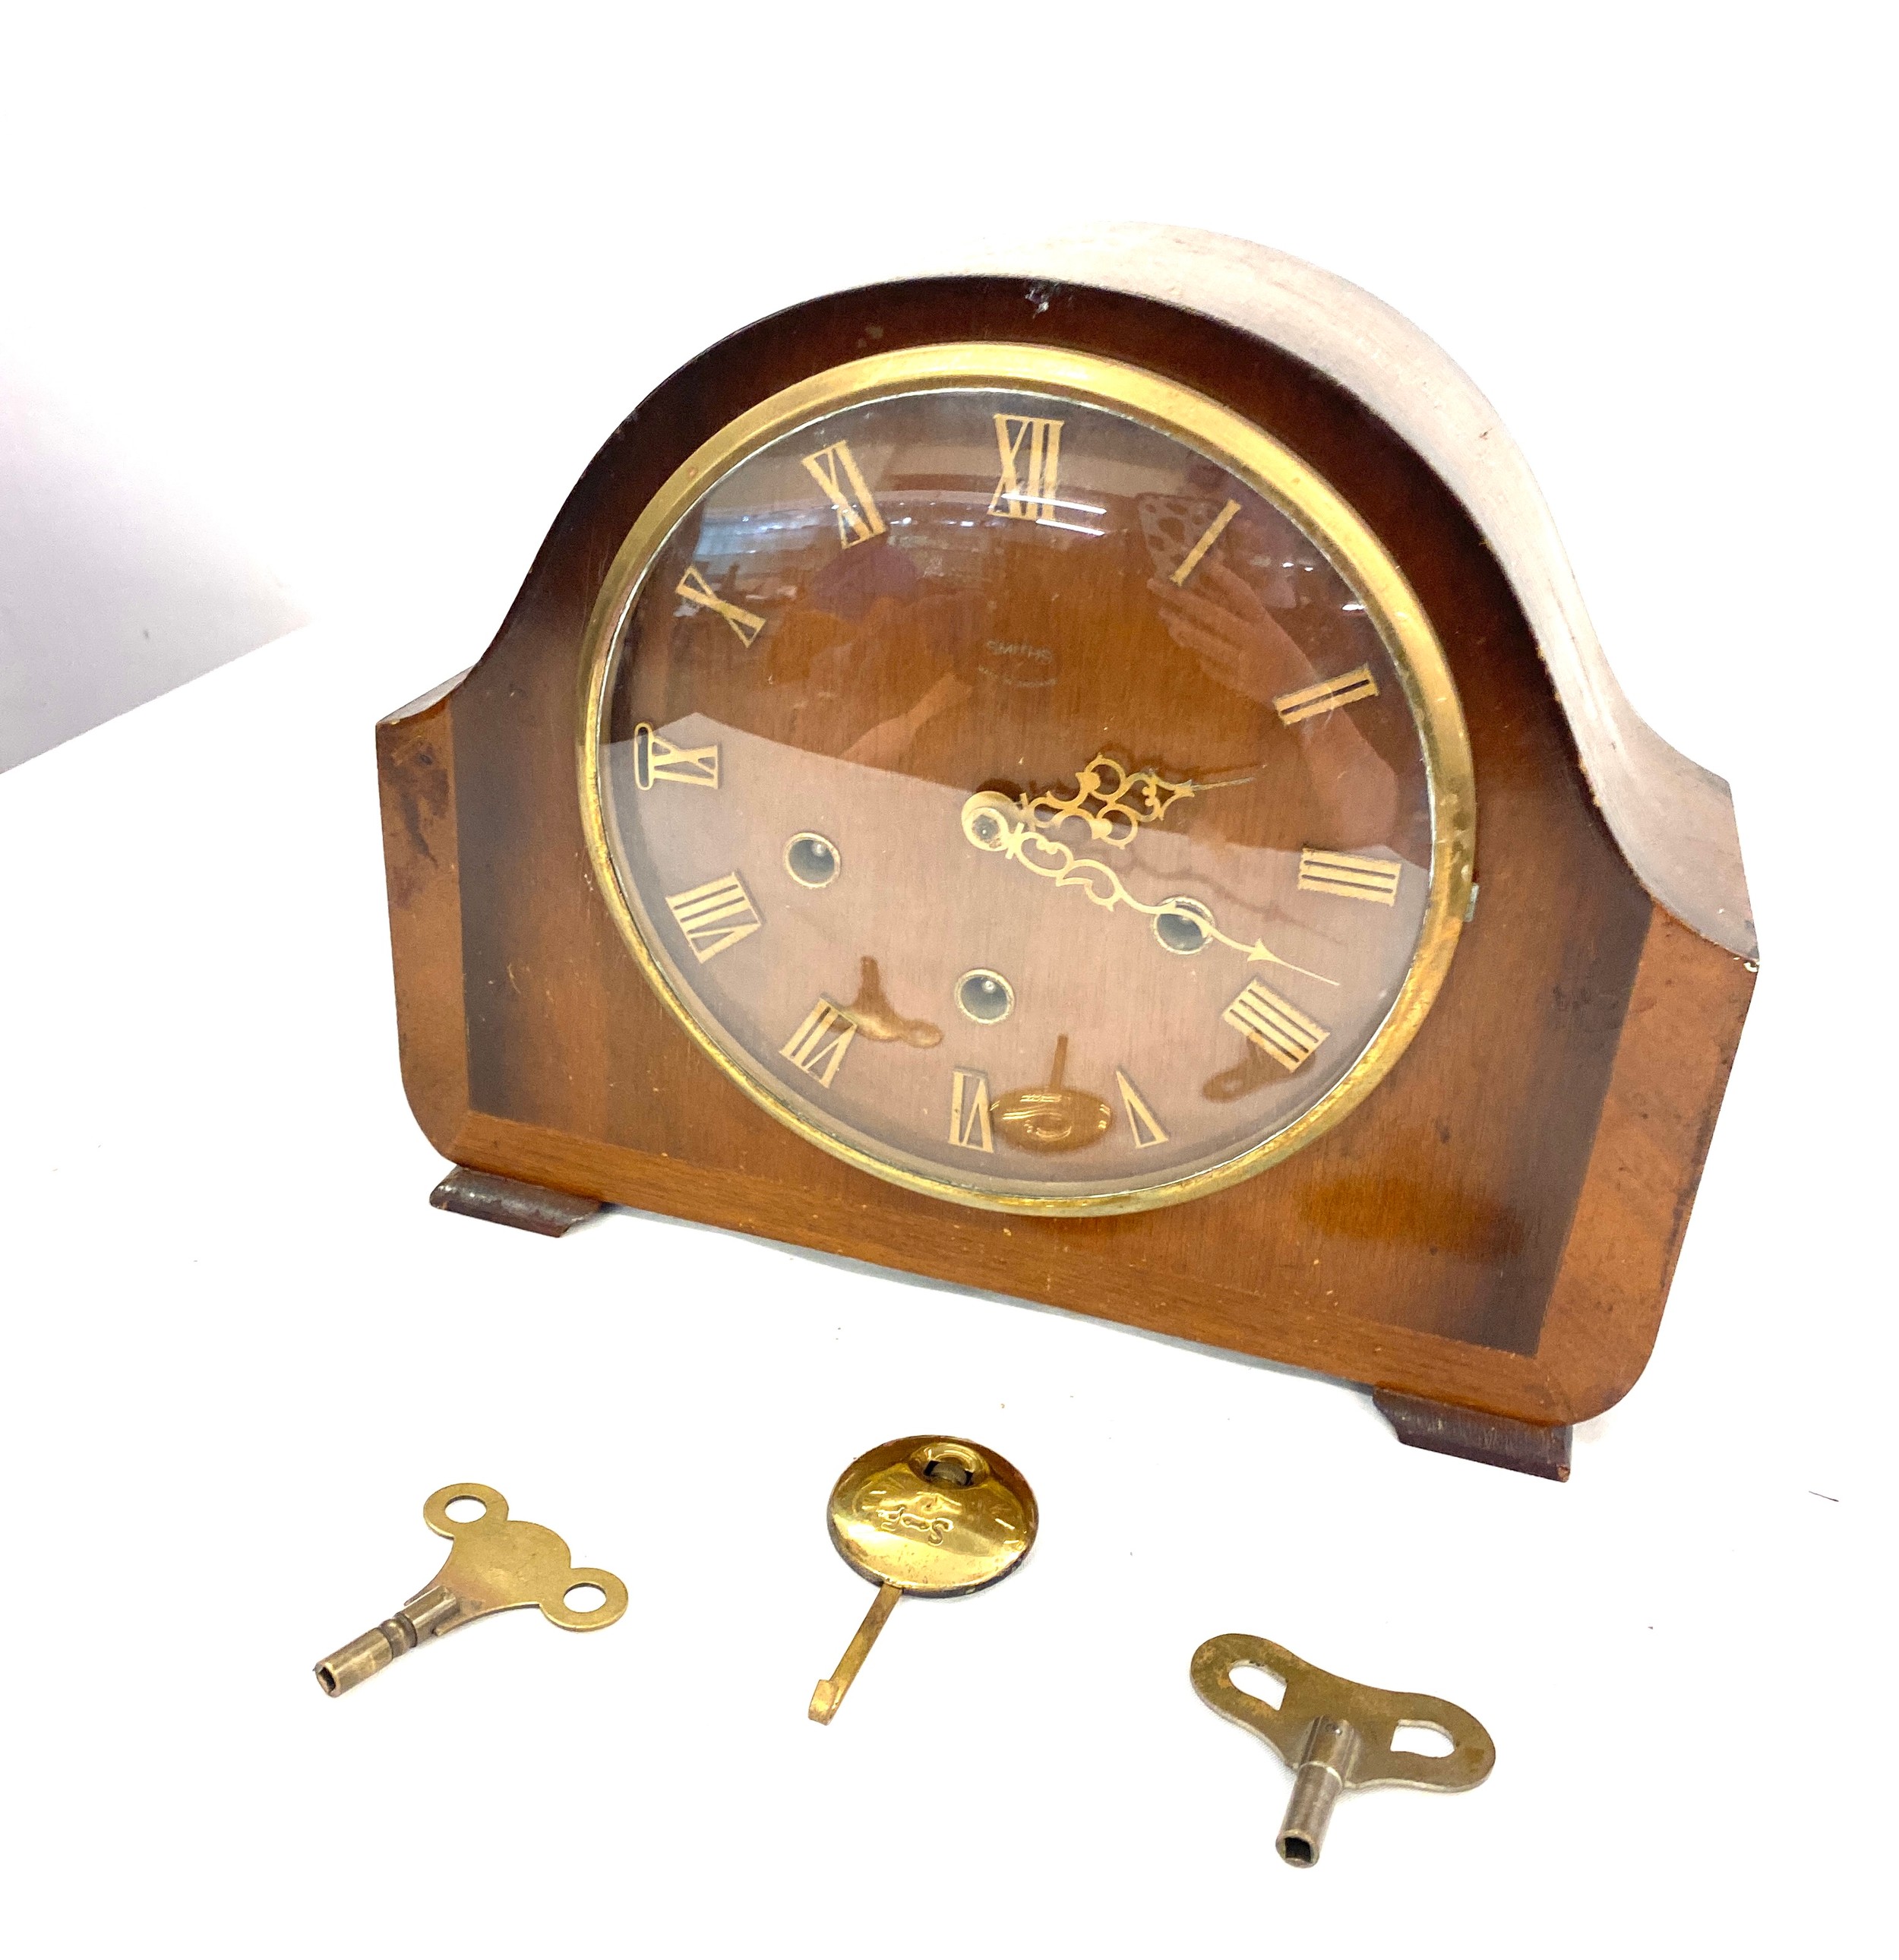 Smiths 3 Key hole mantle clock, with key and pendulum , untested - Image 4 of 4